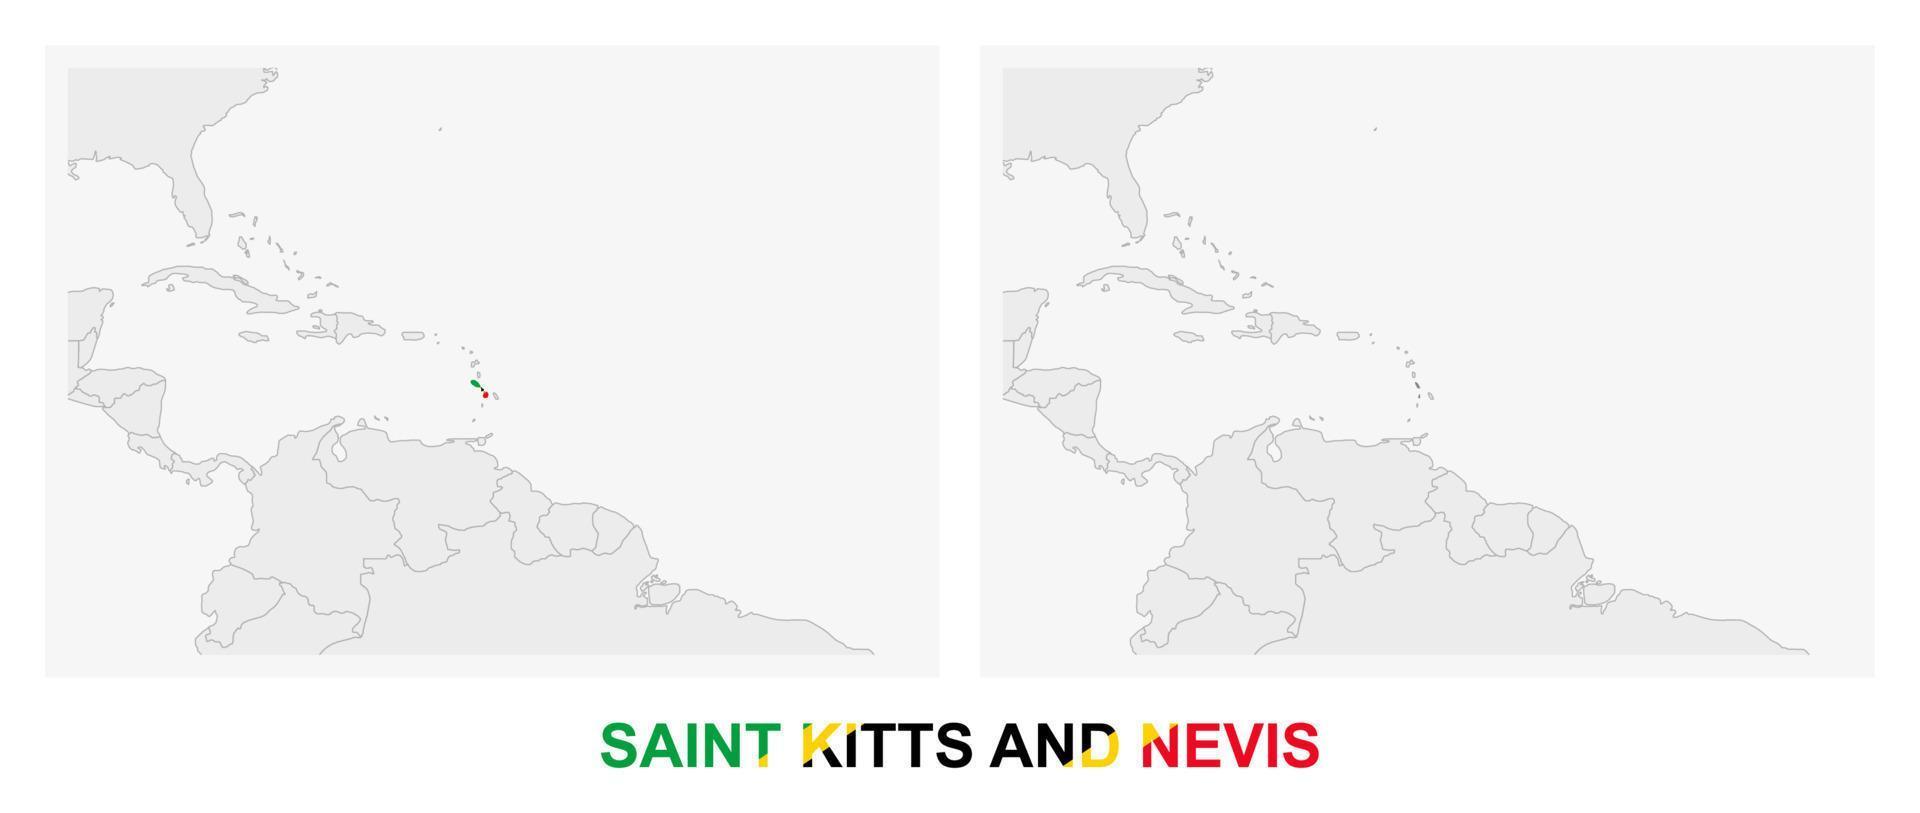 dos versiones del mapa de san cristóbal y nieves, con la bandera de san cristóbal y nieves y resaltada en gris oscuro. vector